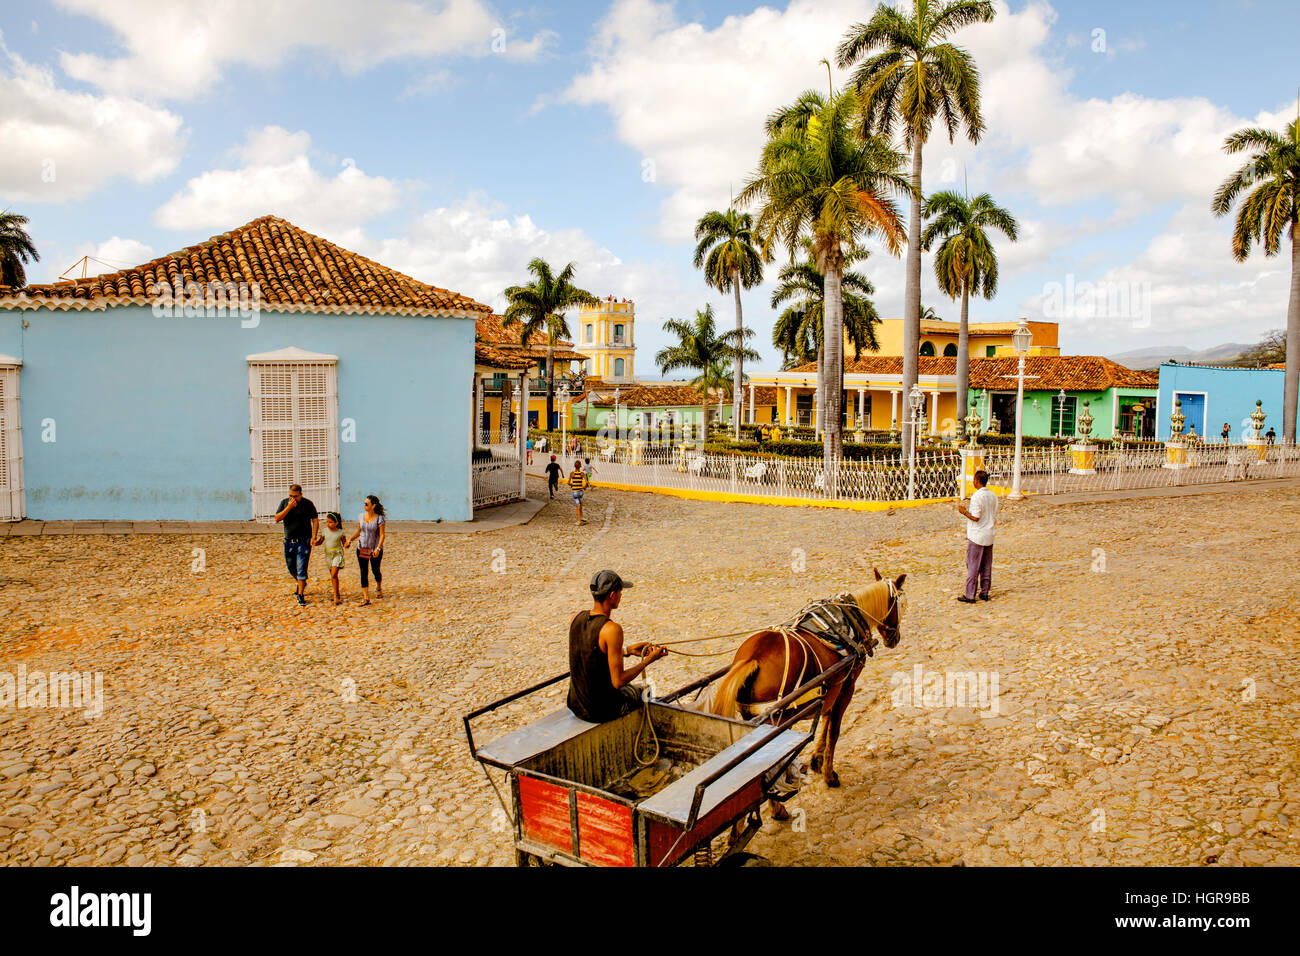 Trinidad, Kuba - 18. Dezember 2016: Menschen auf dem Hauptplatz der Altstadt UNESCO-Weltkulturerbe Trinidad, Kuba Stockfoto